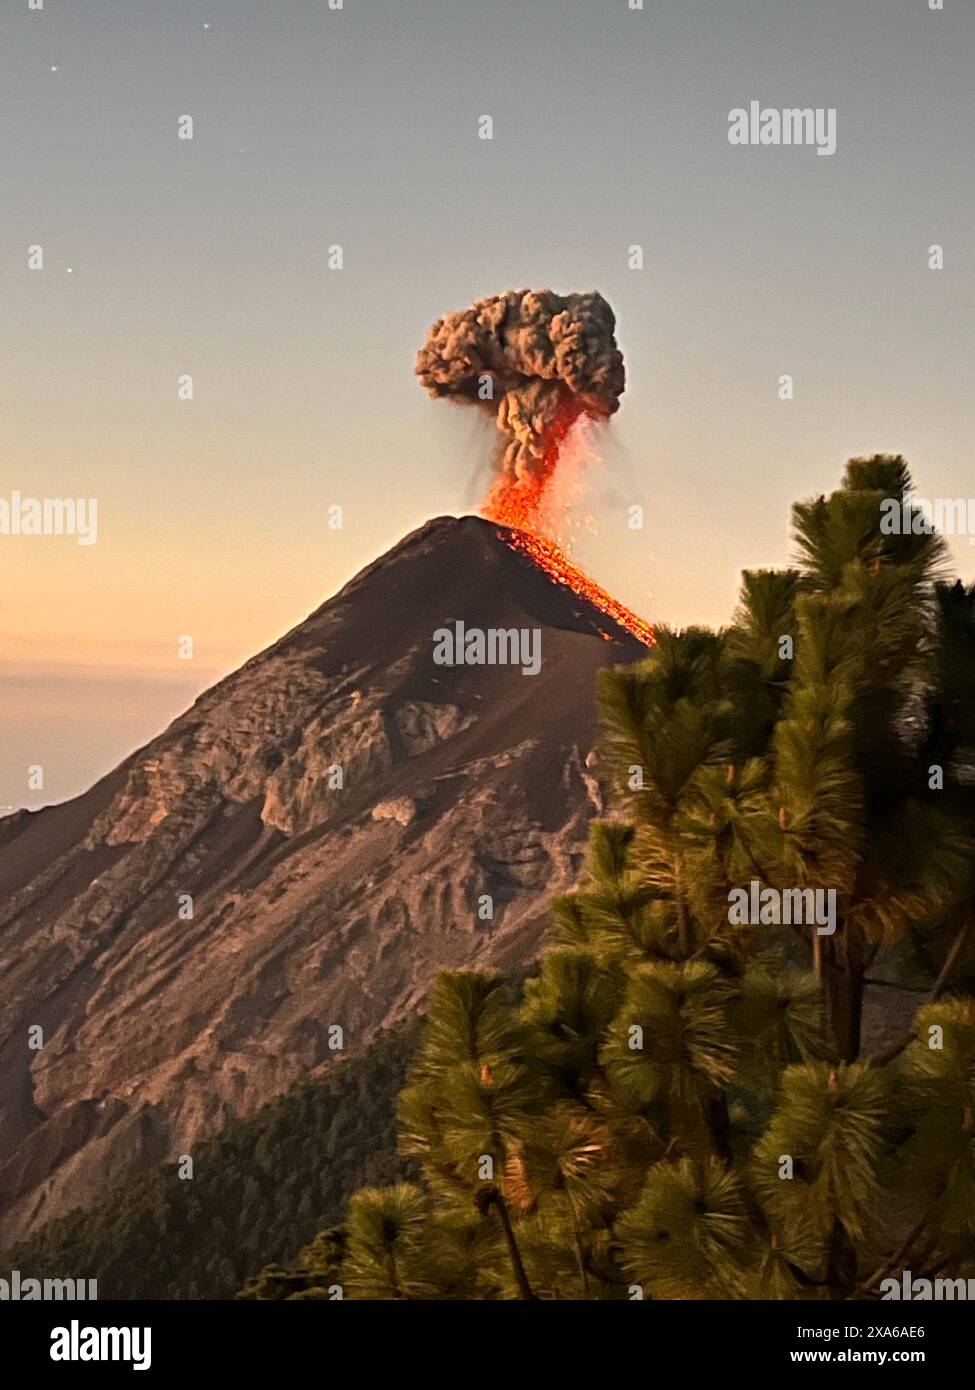 Una montagna vulcanica che emette fumo arancione nel cielo Foto Stock